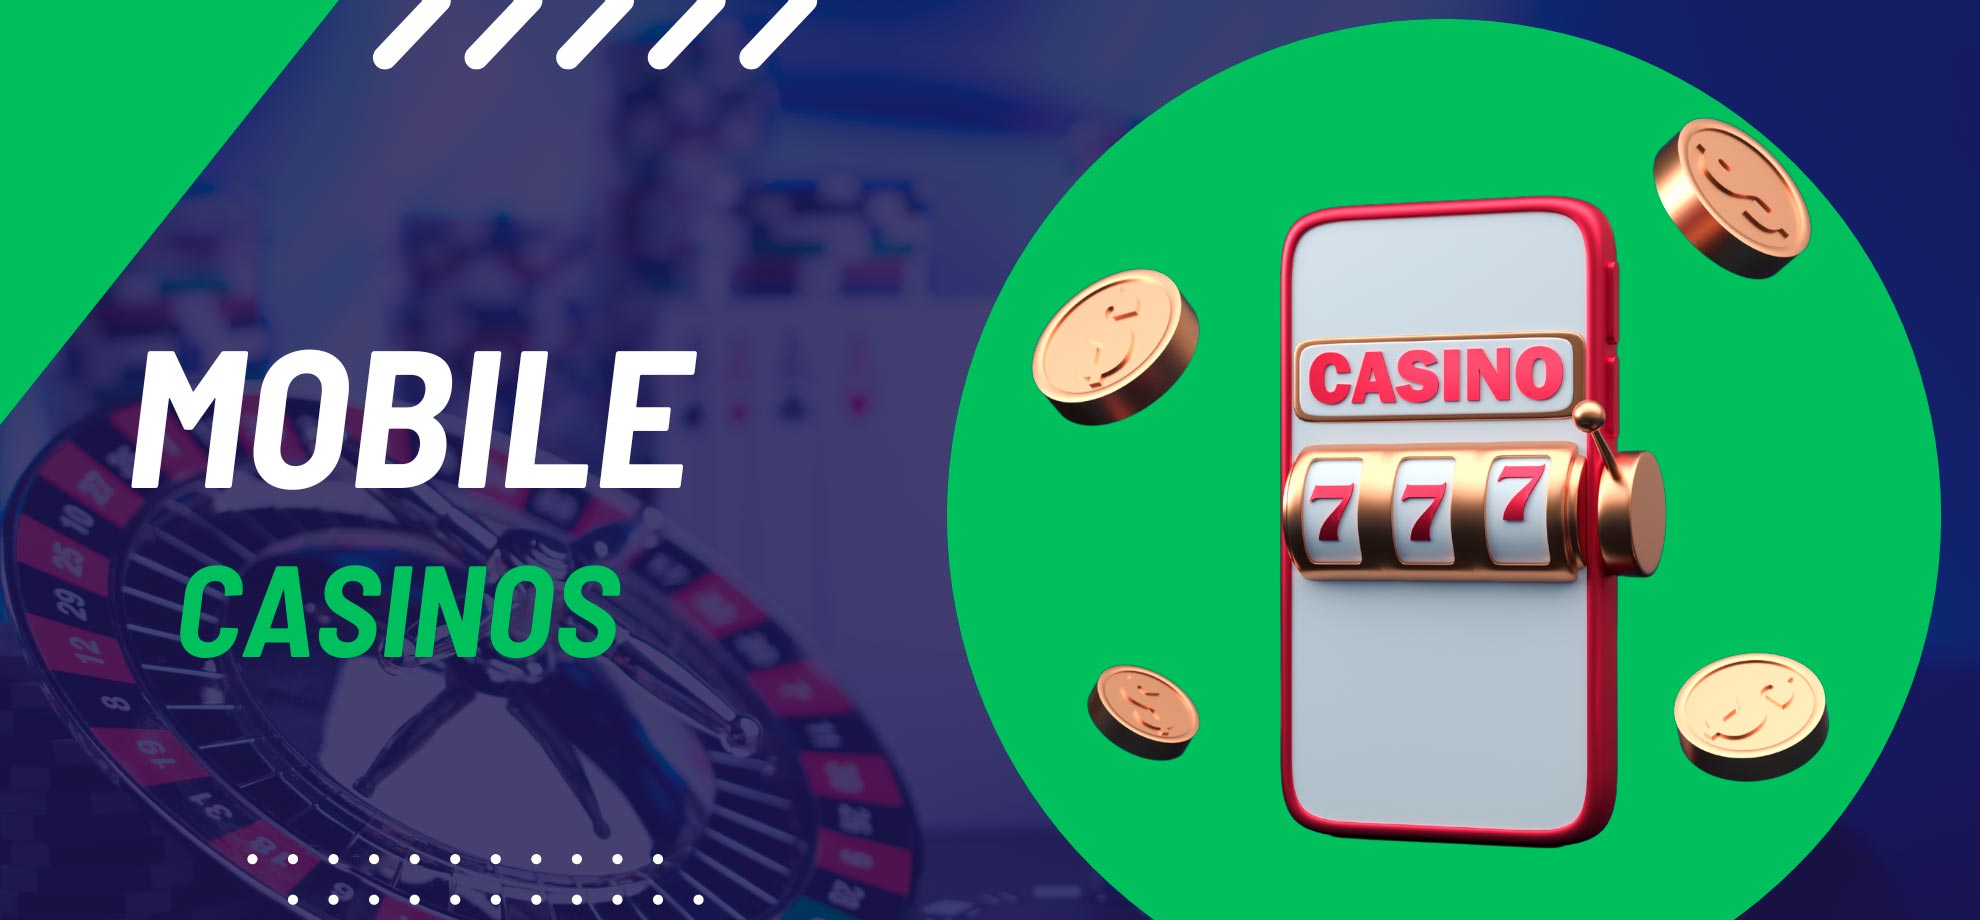 Mobile casinos in India